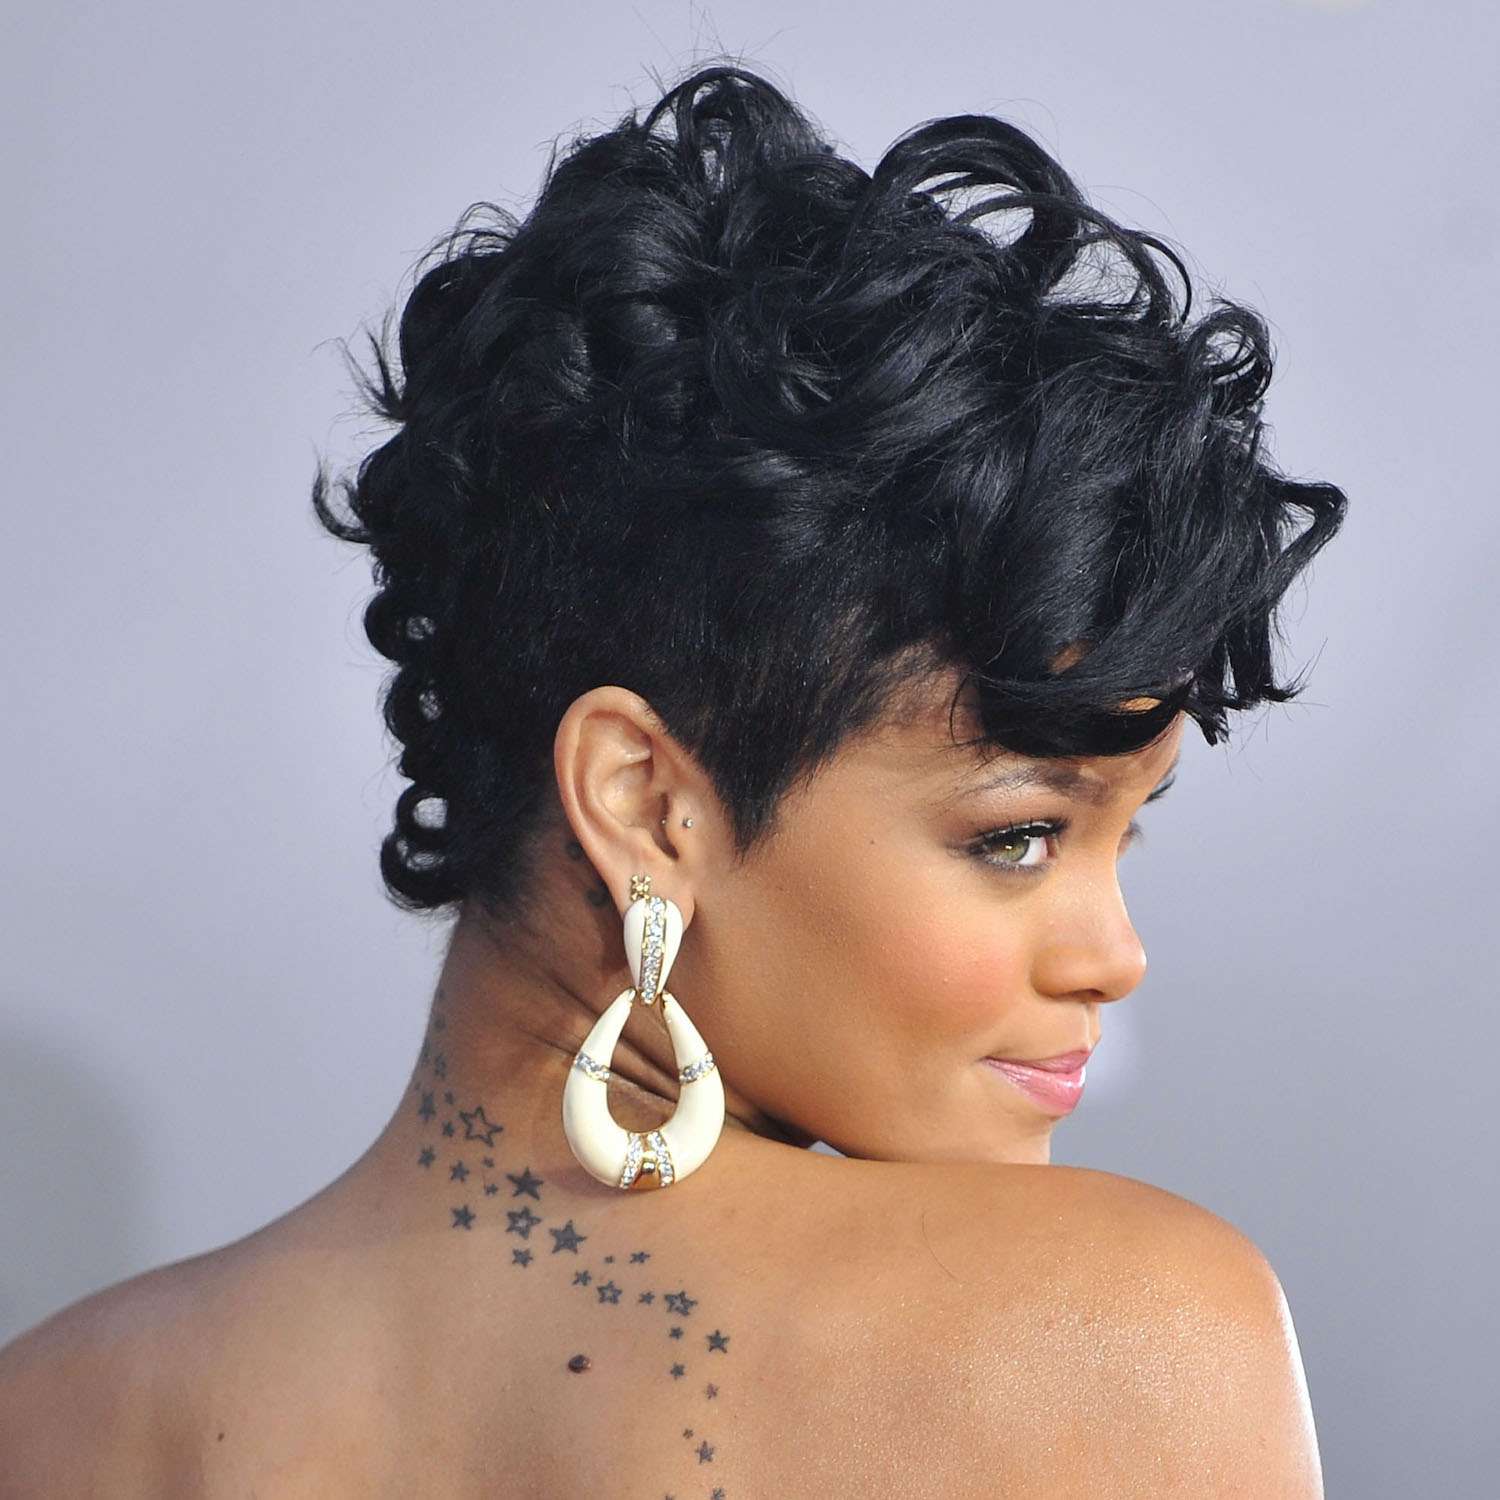 Rihanna com cabelo curto cacheado e tatuagem de estrela nas costas